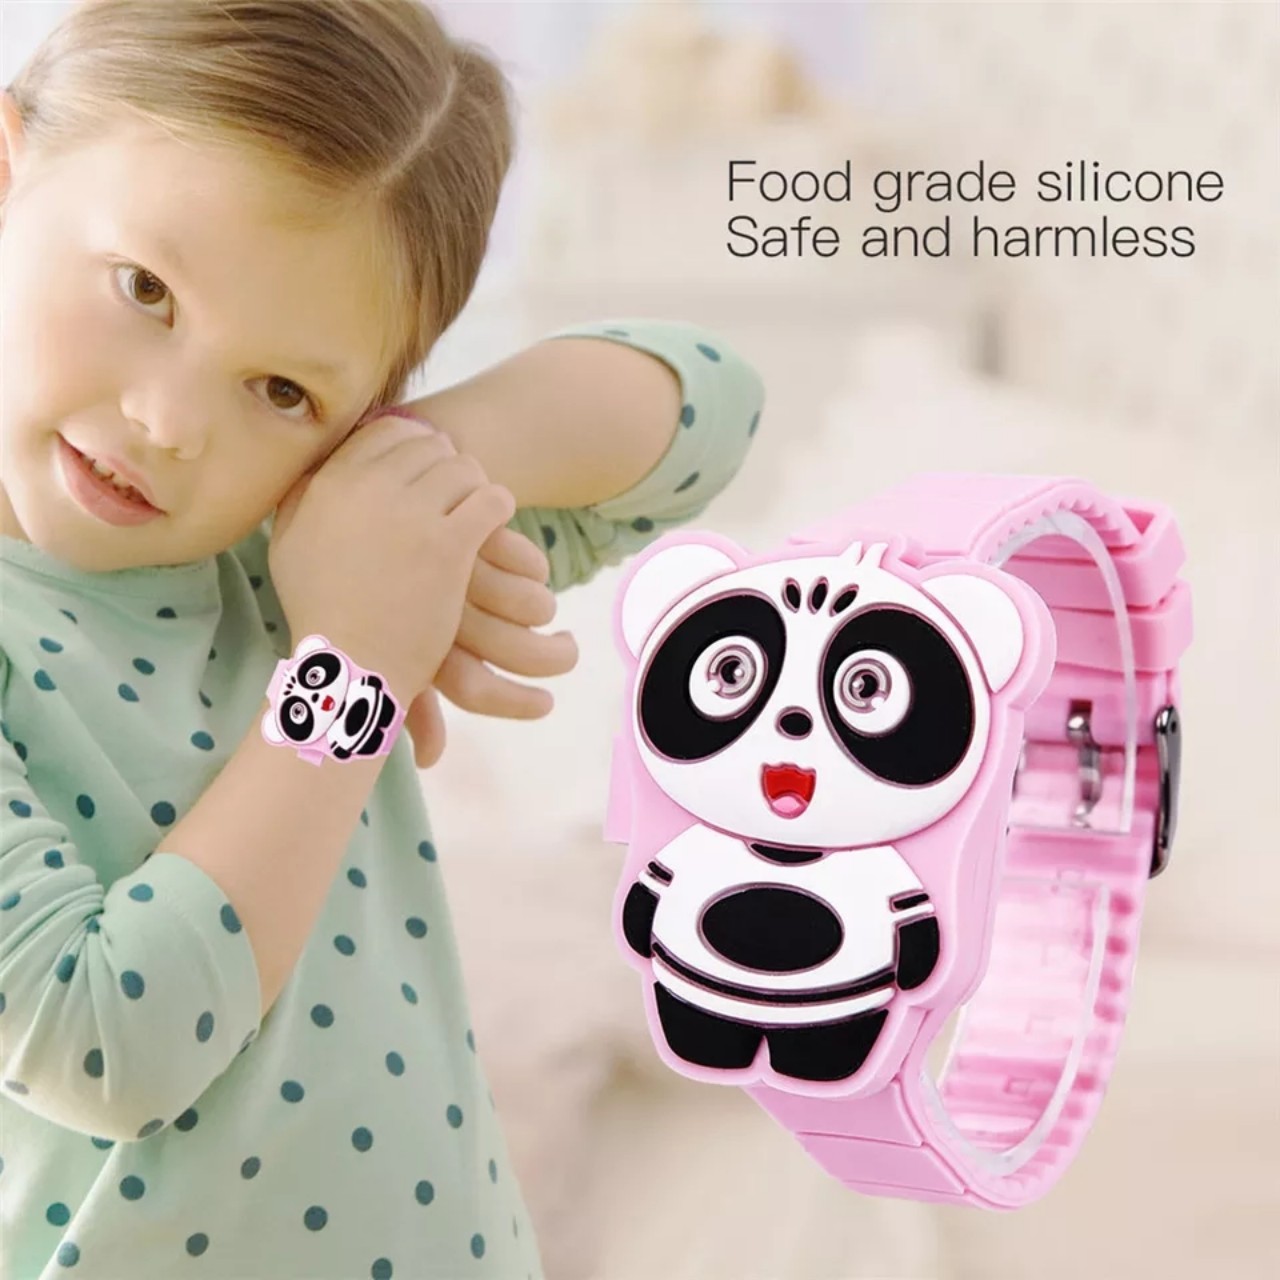 Đồng hồ đèn LED cho bé gái hình chú gấu cute dây silicon xinh xắn – DH012